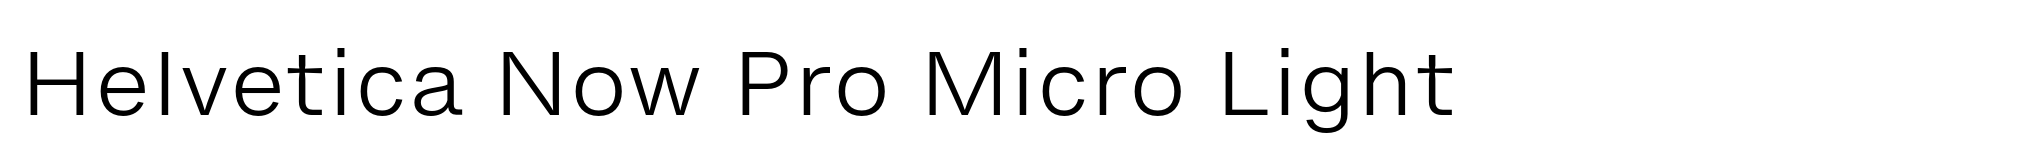 Helvetica Now Pro Micro Light image